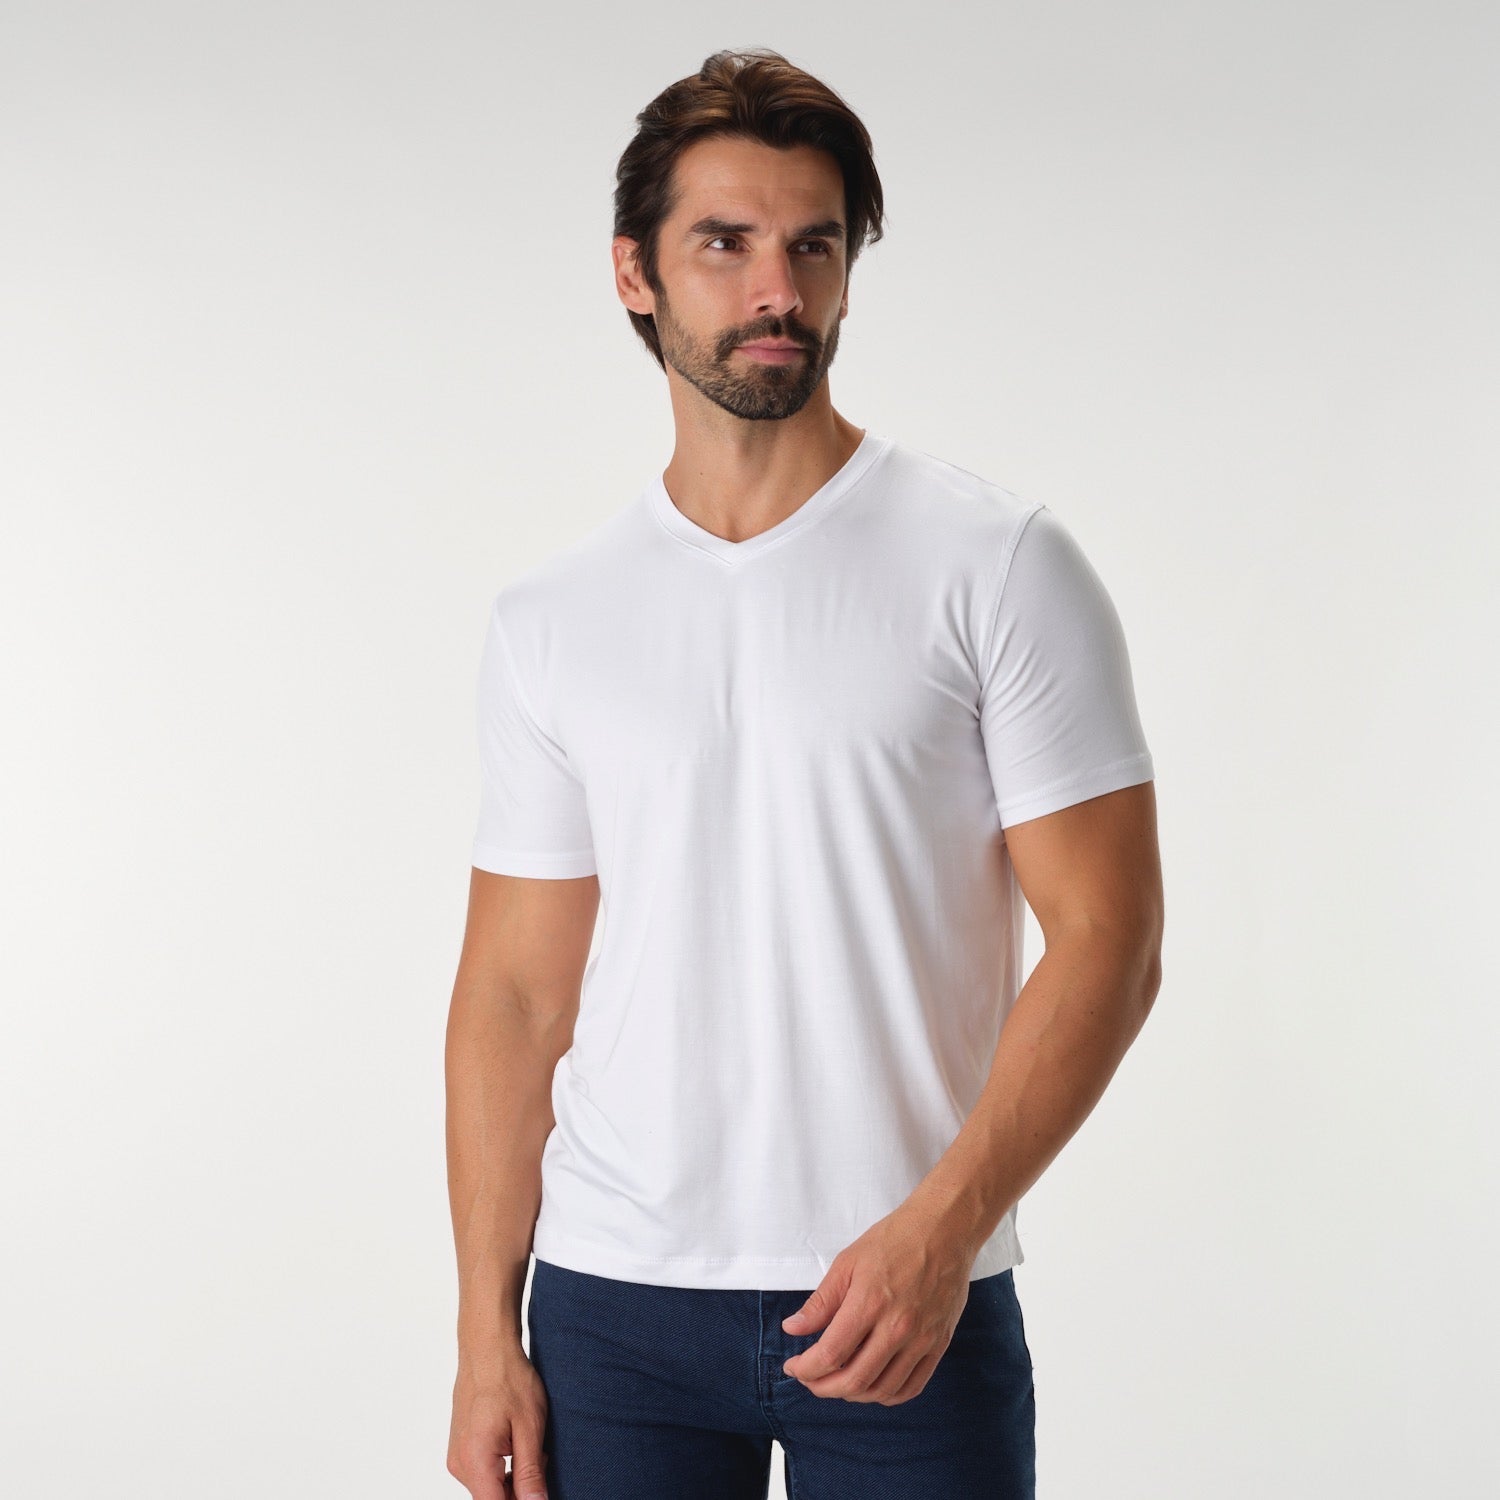 Solid Performance White V-Neck T-Shirt